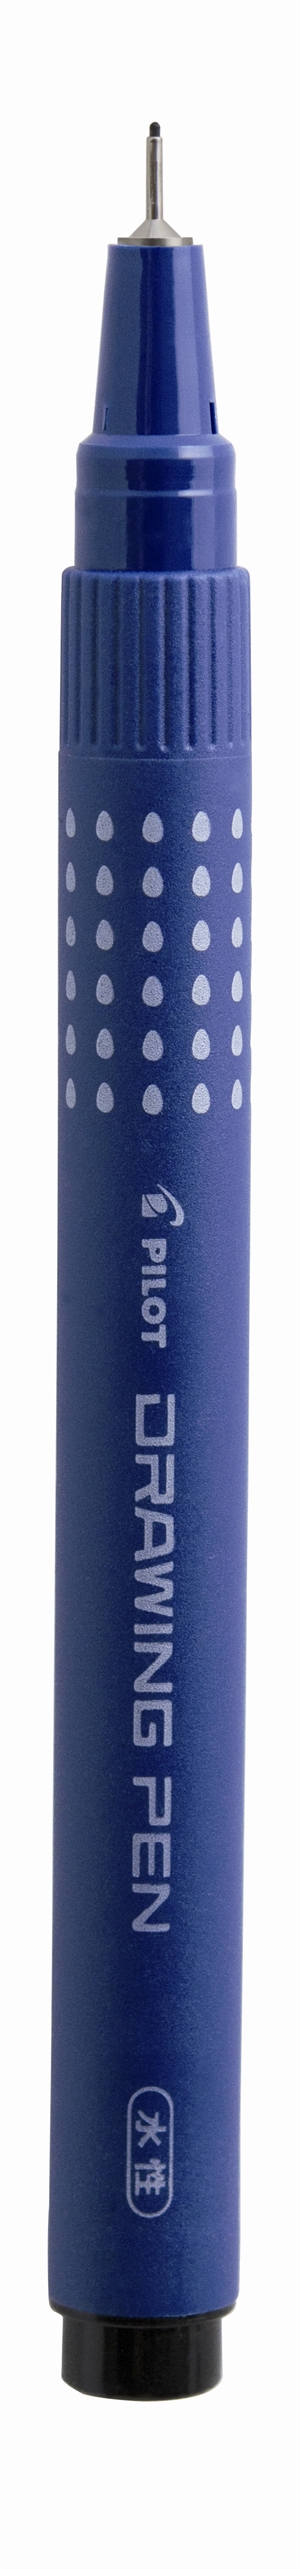 Penna a punta sottile da disegno con cappuccio Pilot Filtpen 0,2mm nera